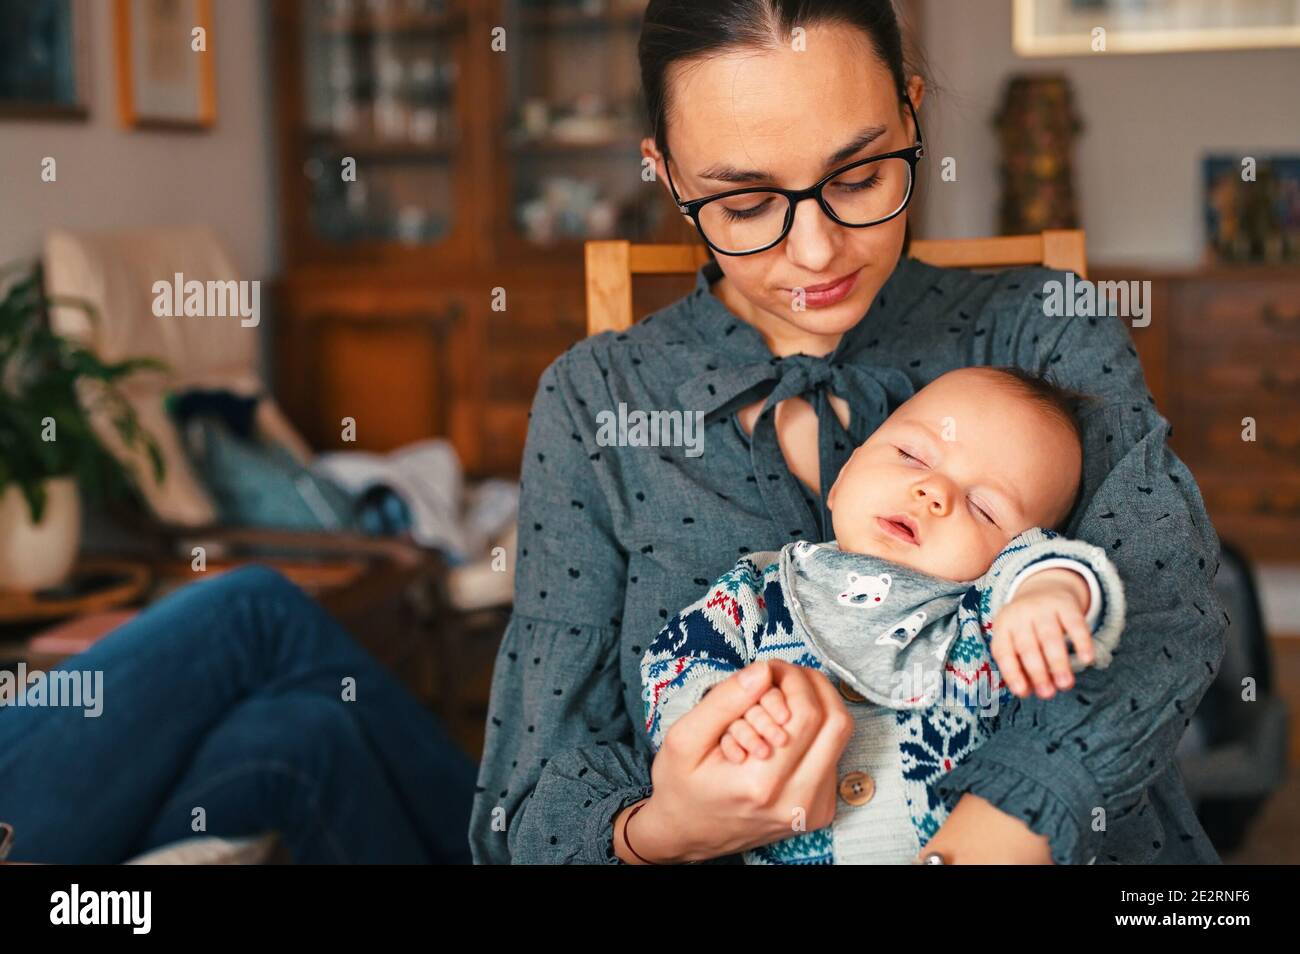 Madre joven sentada en la sala de estar y sosteniendo al bebé recién nacido Foto de stock